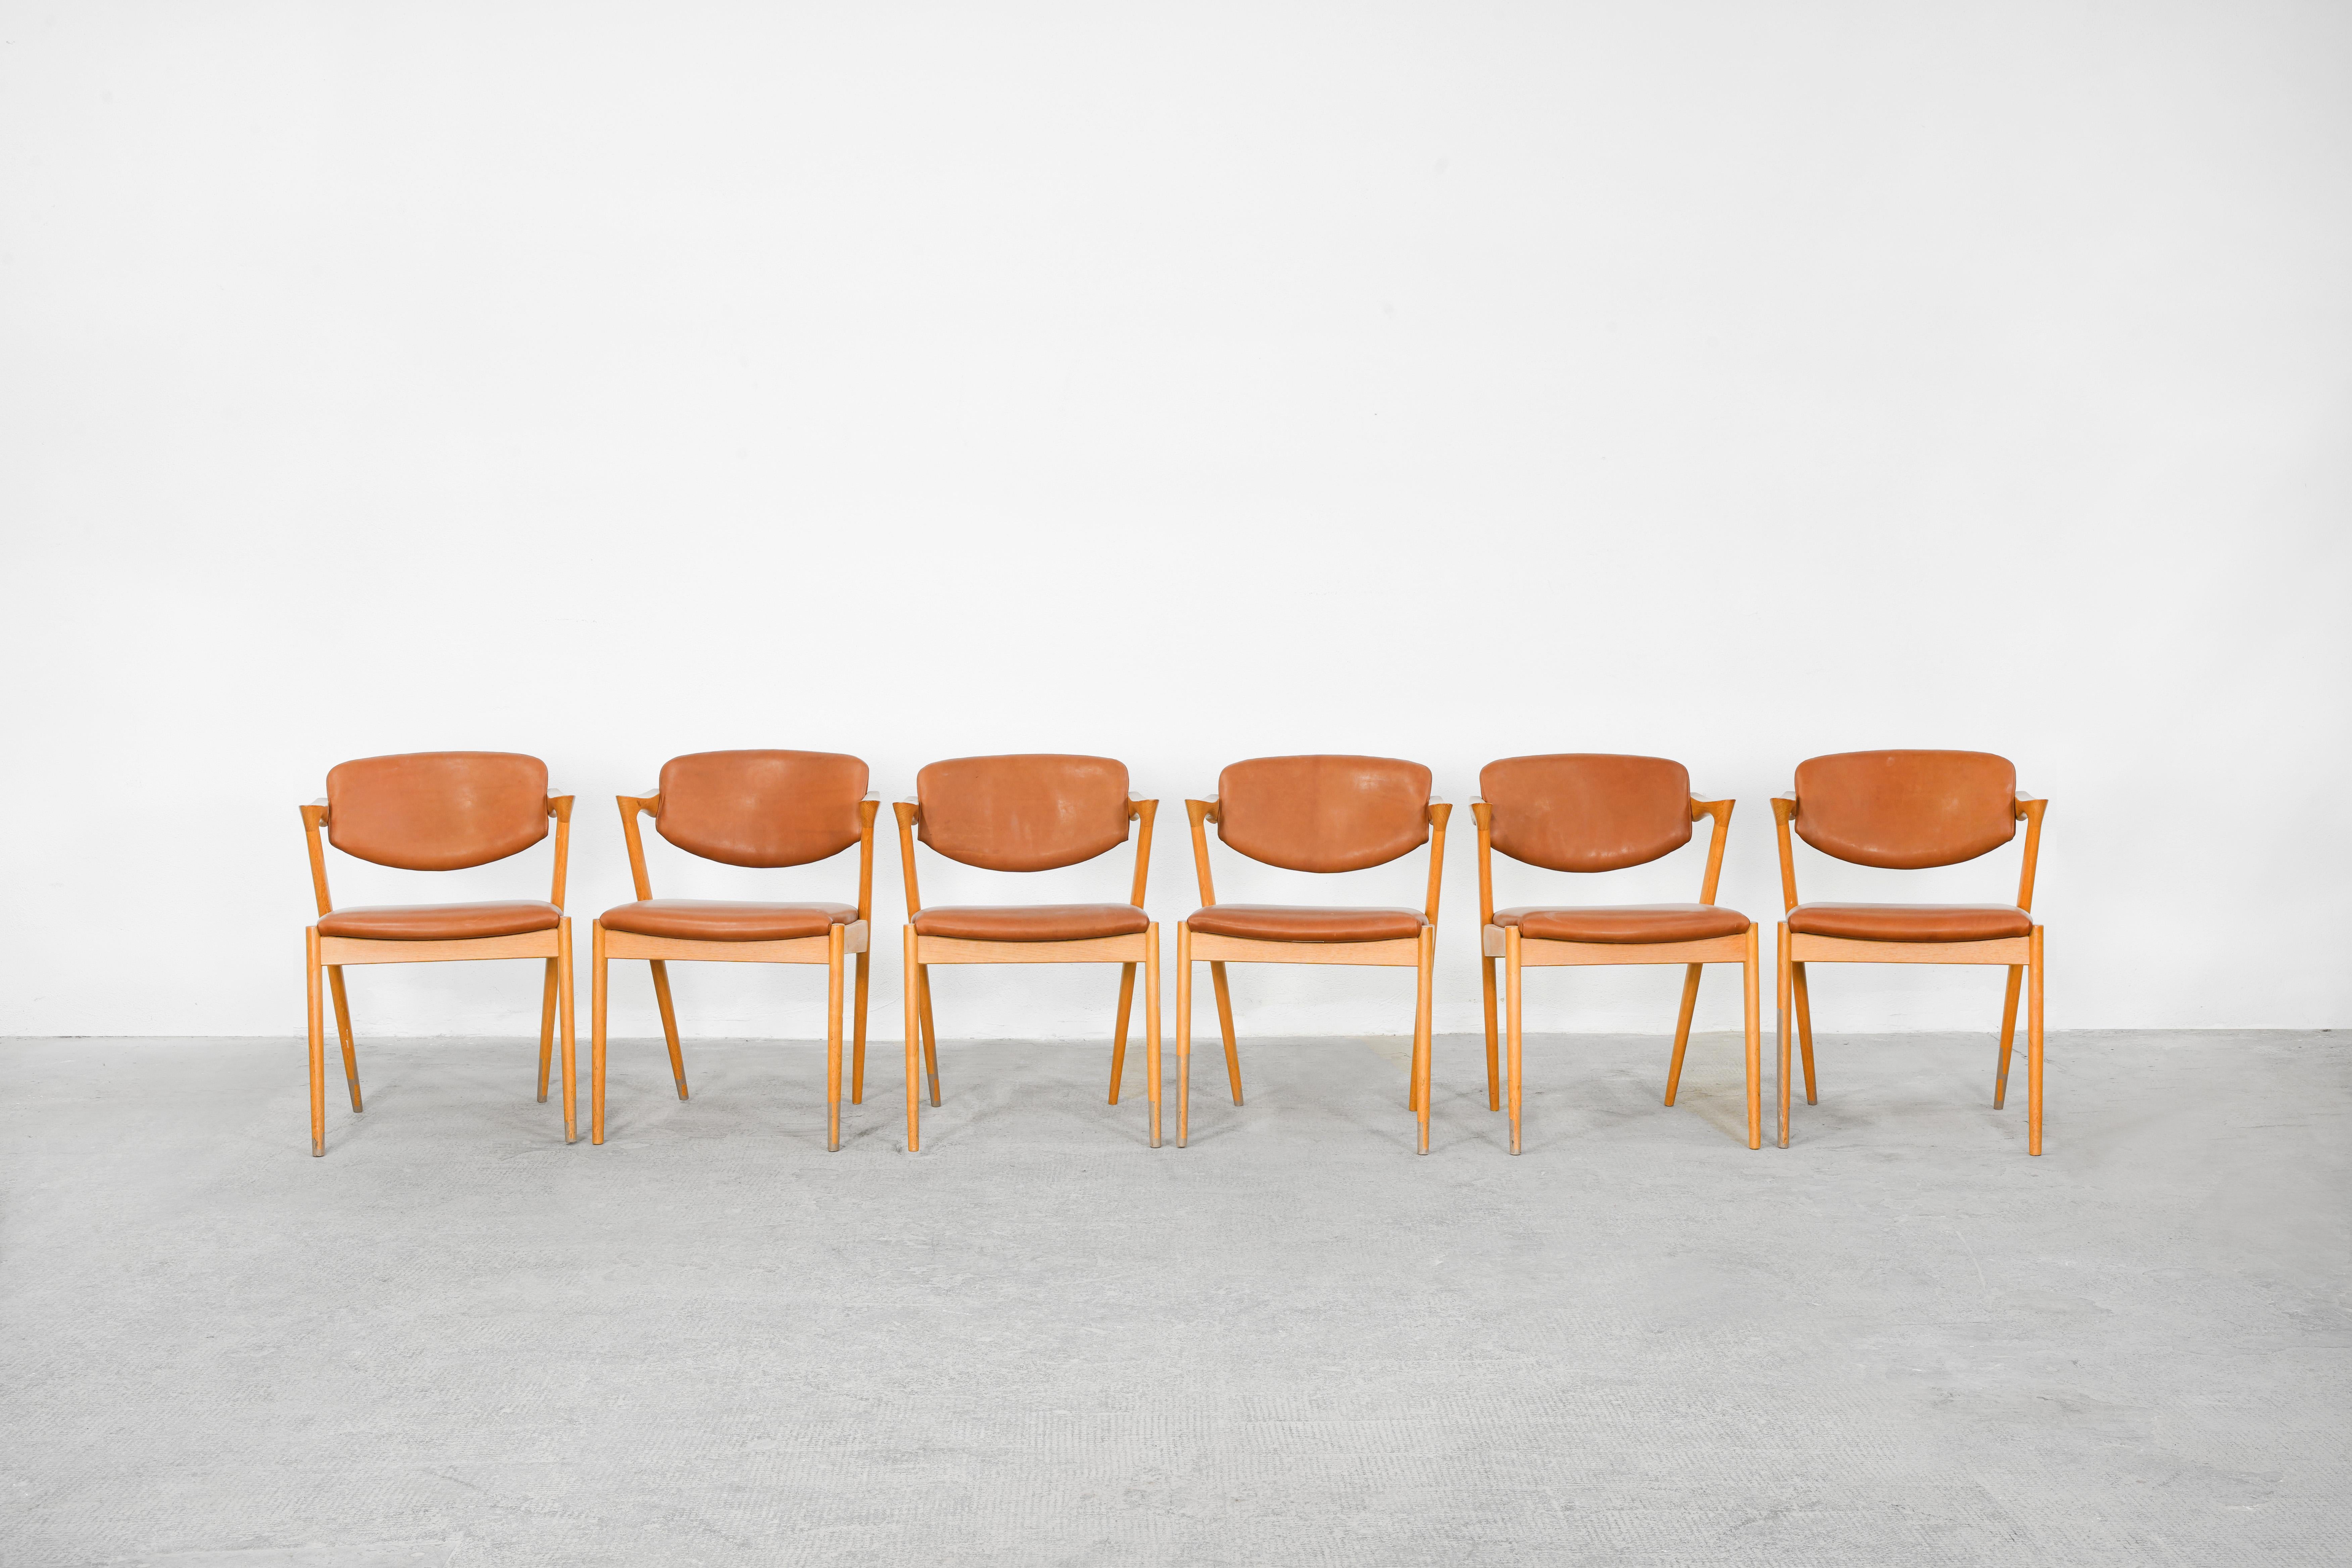 Très bel ensemble de six chaises de salle à manger conçues par Kai Kristiansen et produites par V.I.I.I. Andersen, Danemark, en 1964. Les chaises sont en très bon état, elles ont toutes été récemment retapissées avec du cuir marron de haute qualité